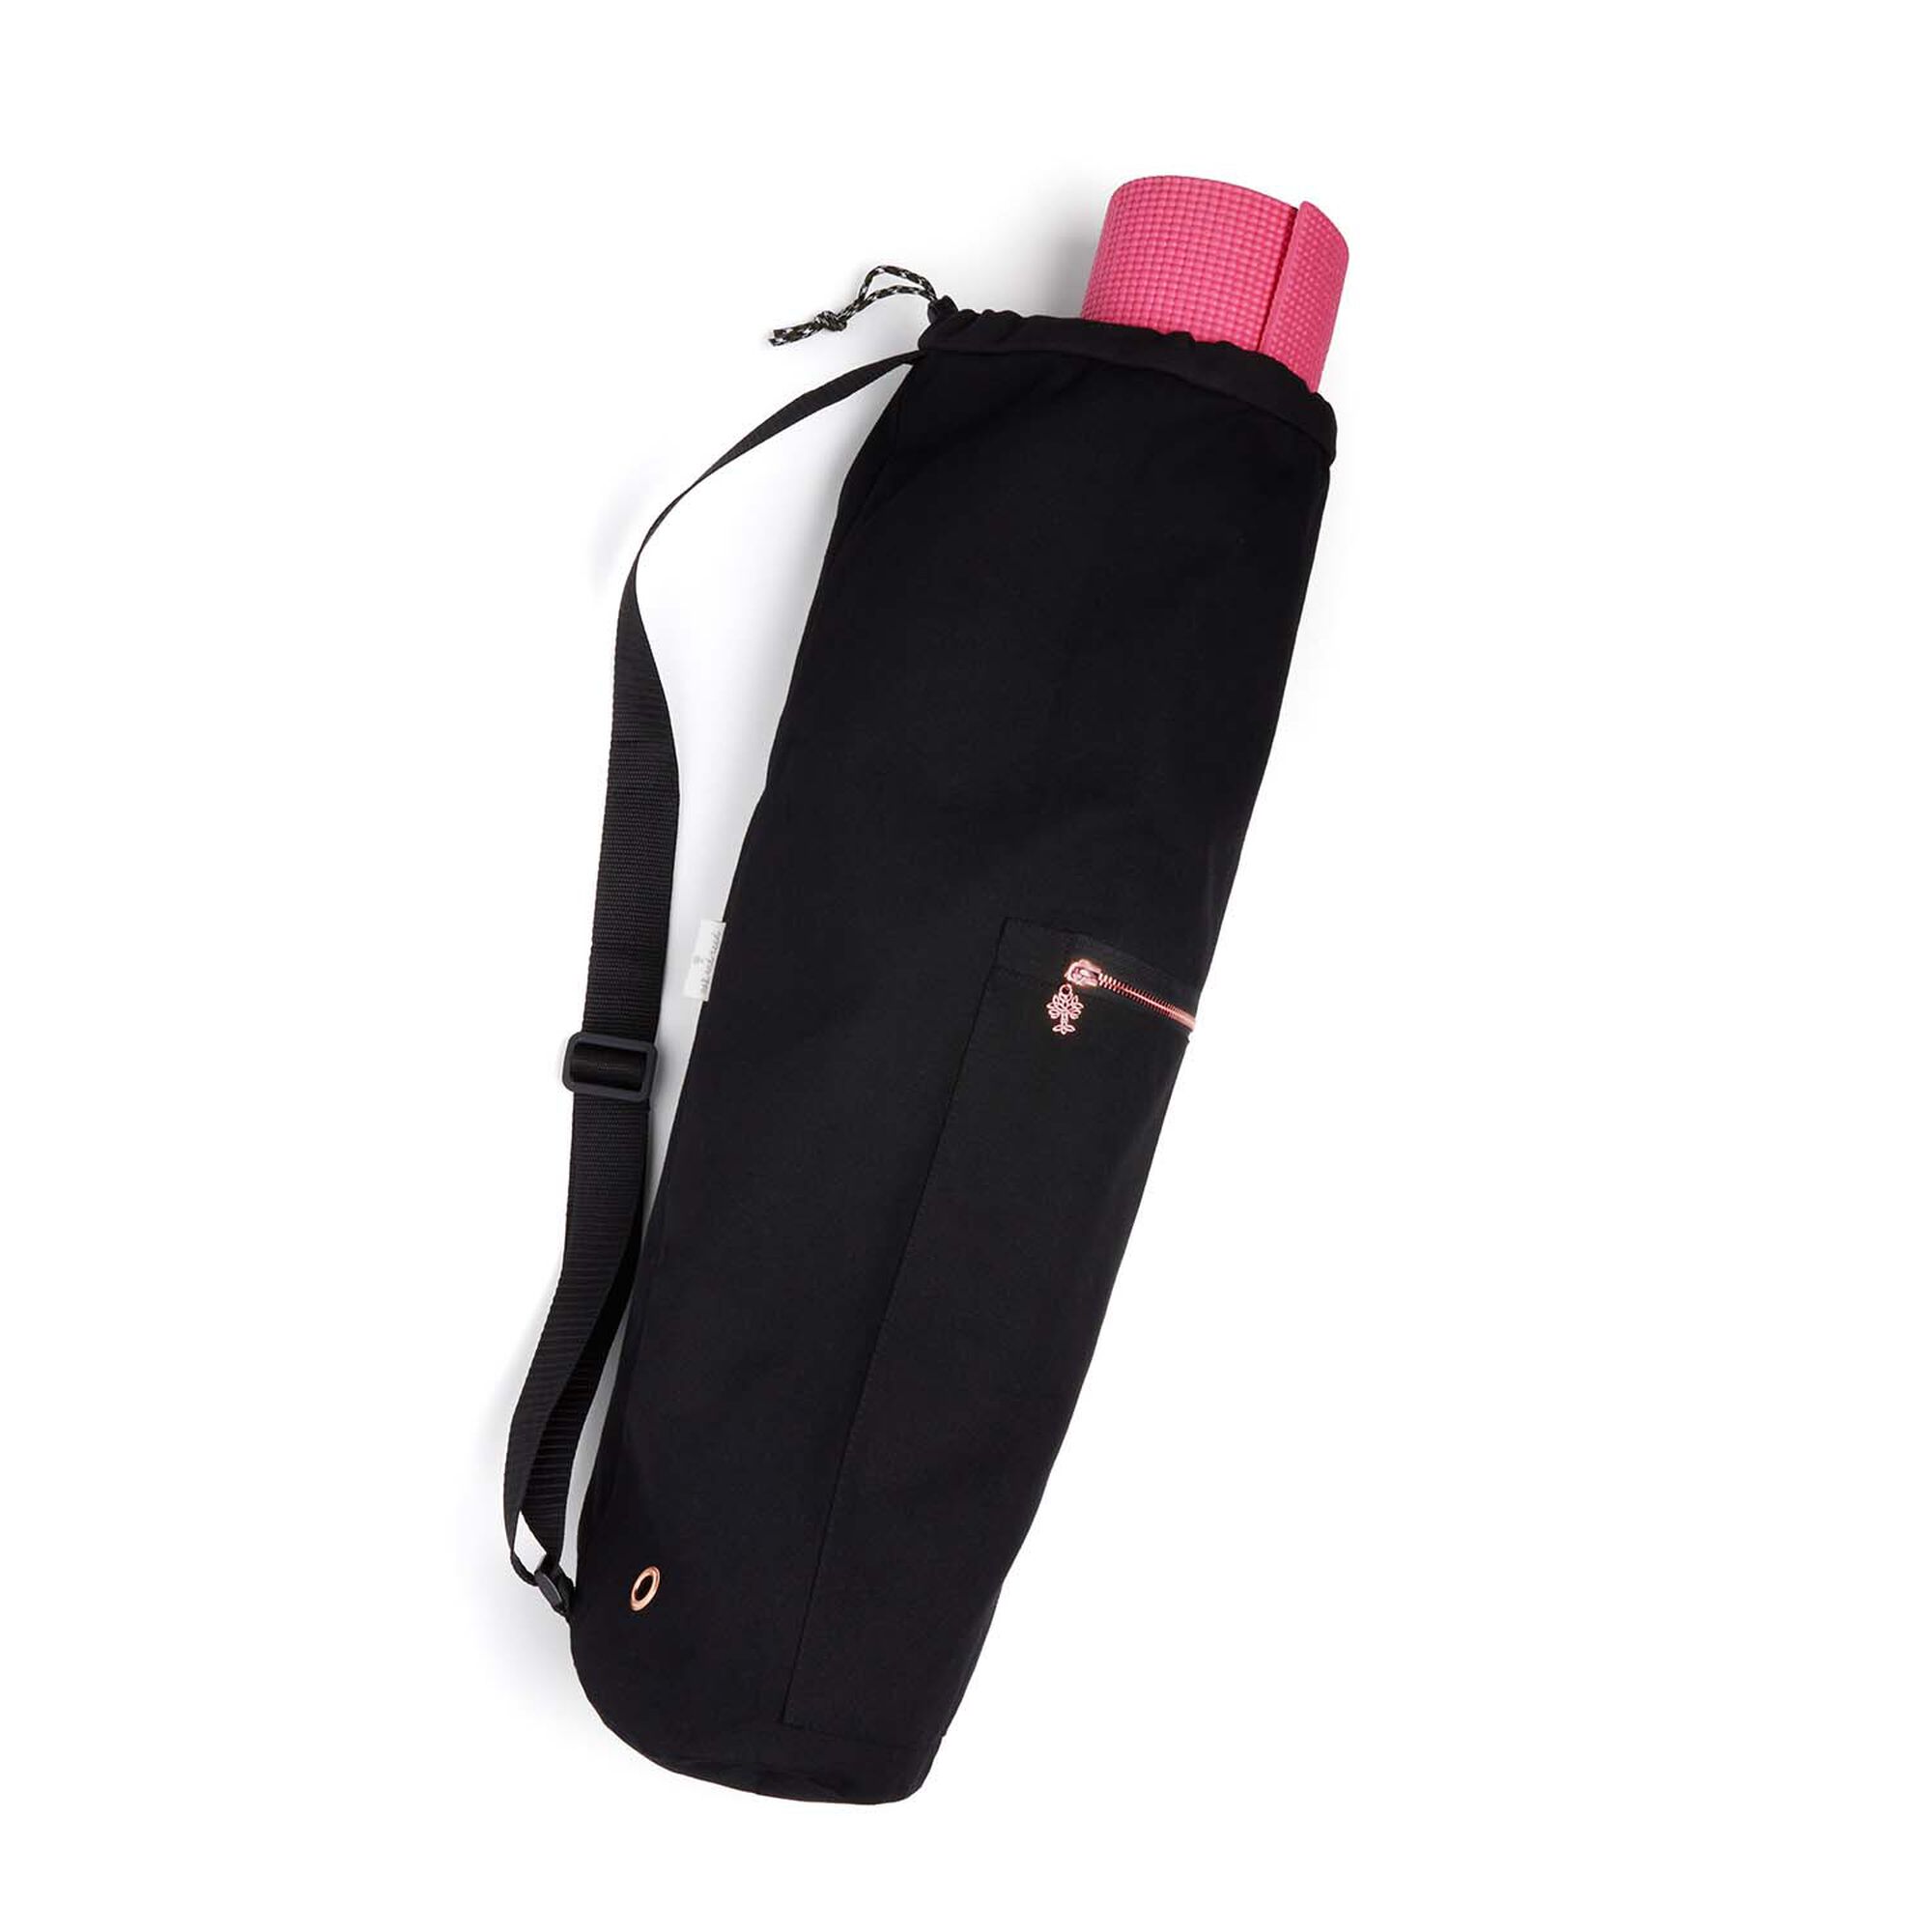 Adjustable Strap Realer Yoga Mat Bag with Large Size Pocket Fit Most Size Mats 